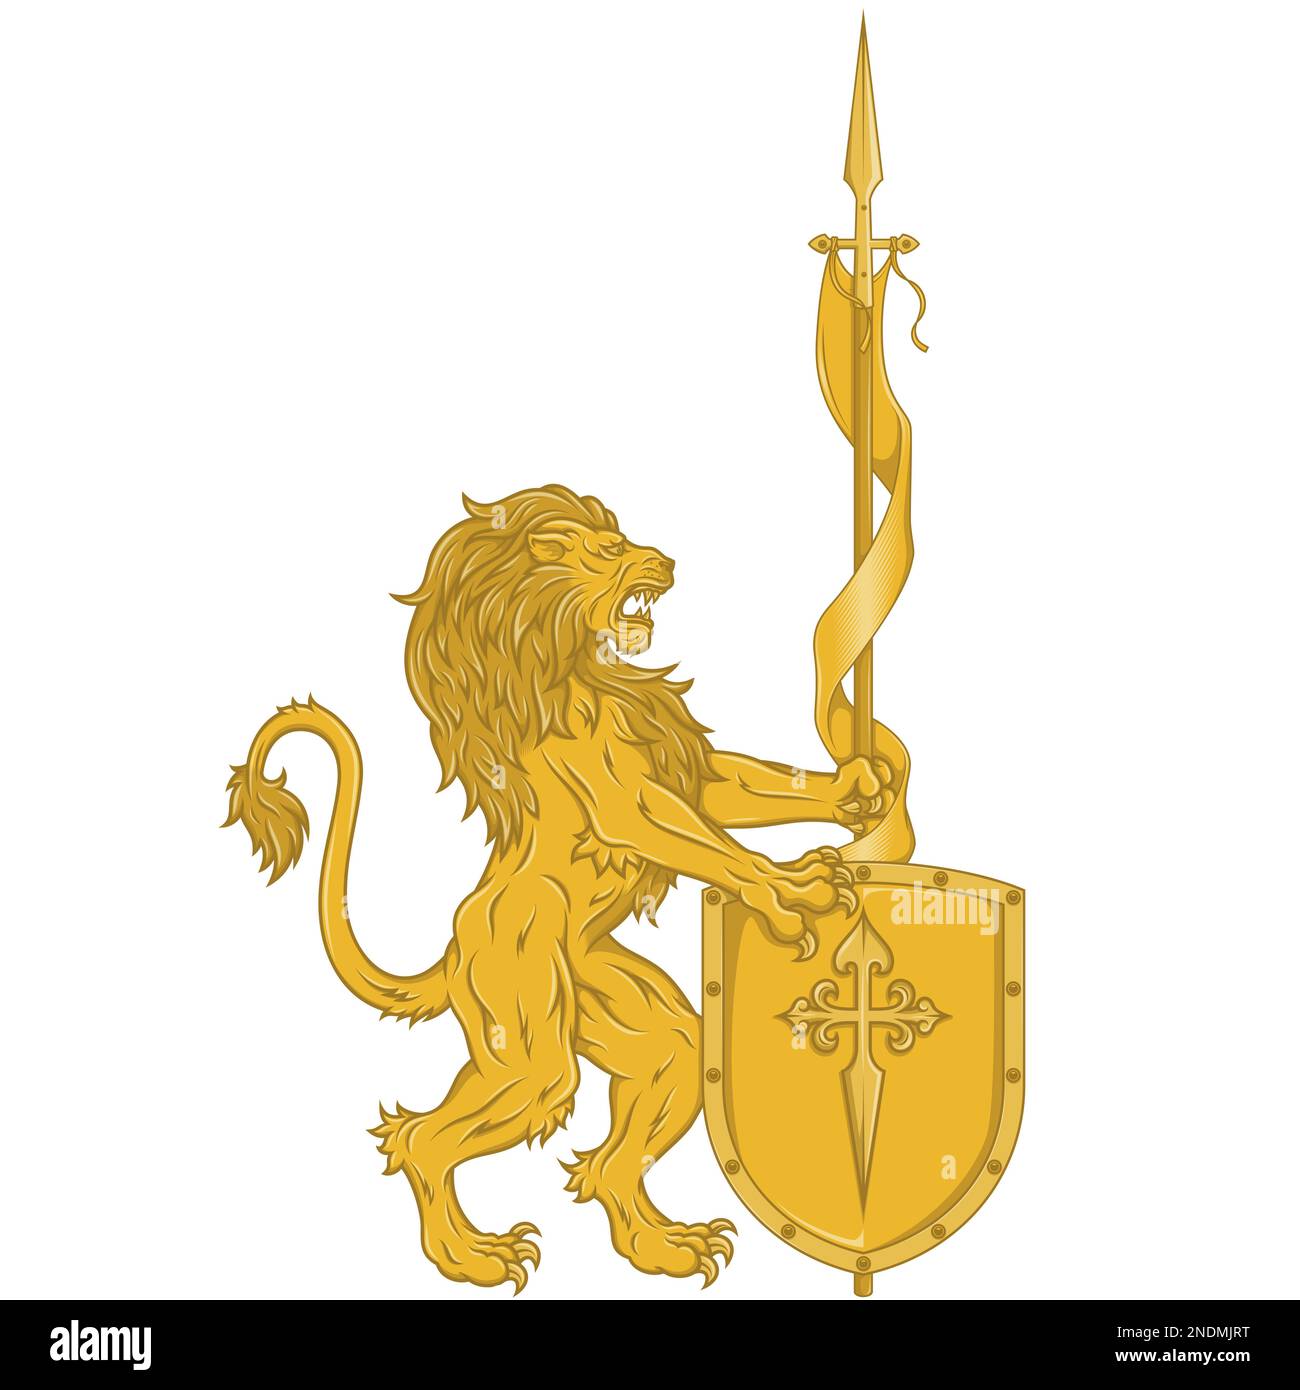 Disegno vettoriale di leone rampante con pennante e scudo medioevale, leone armata con lancia e scudo, simbolo araldico del Medioevo europeo Illustrazione Vettoriale